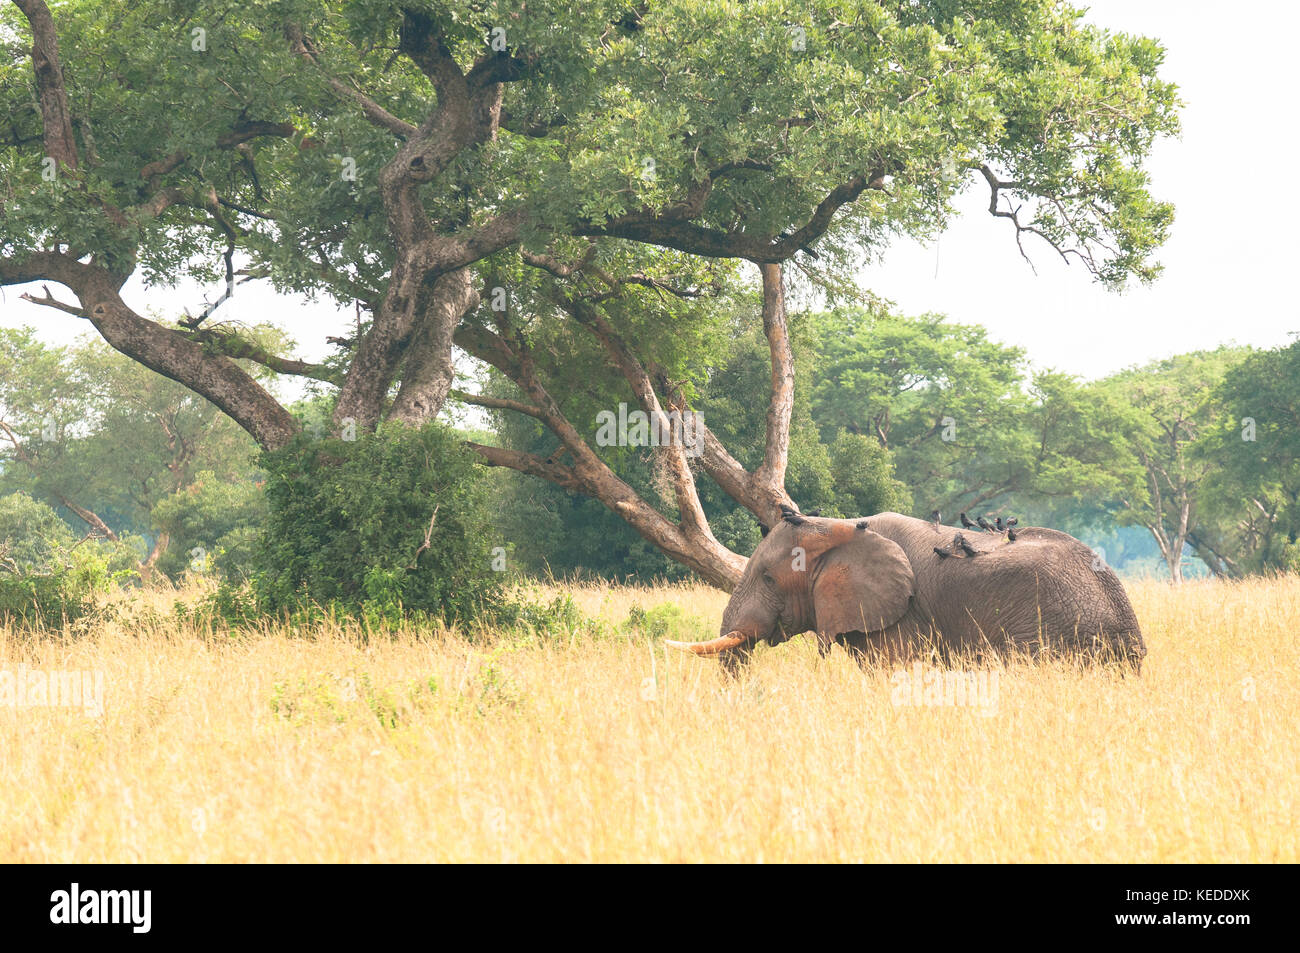 Bull elephant dans l'herbe haute, Murchison Falls, parc national, de l'Ouganda. Banque D'Images